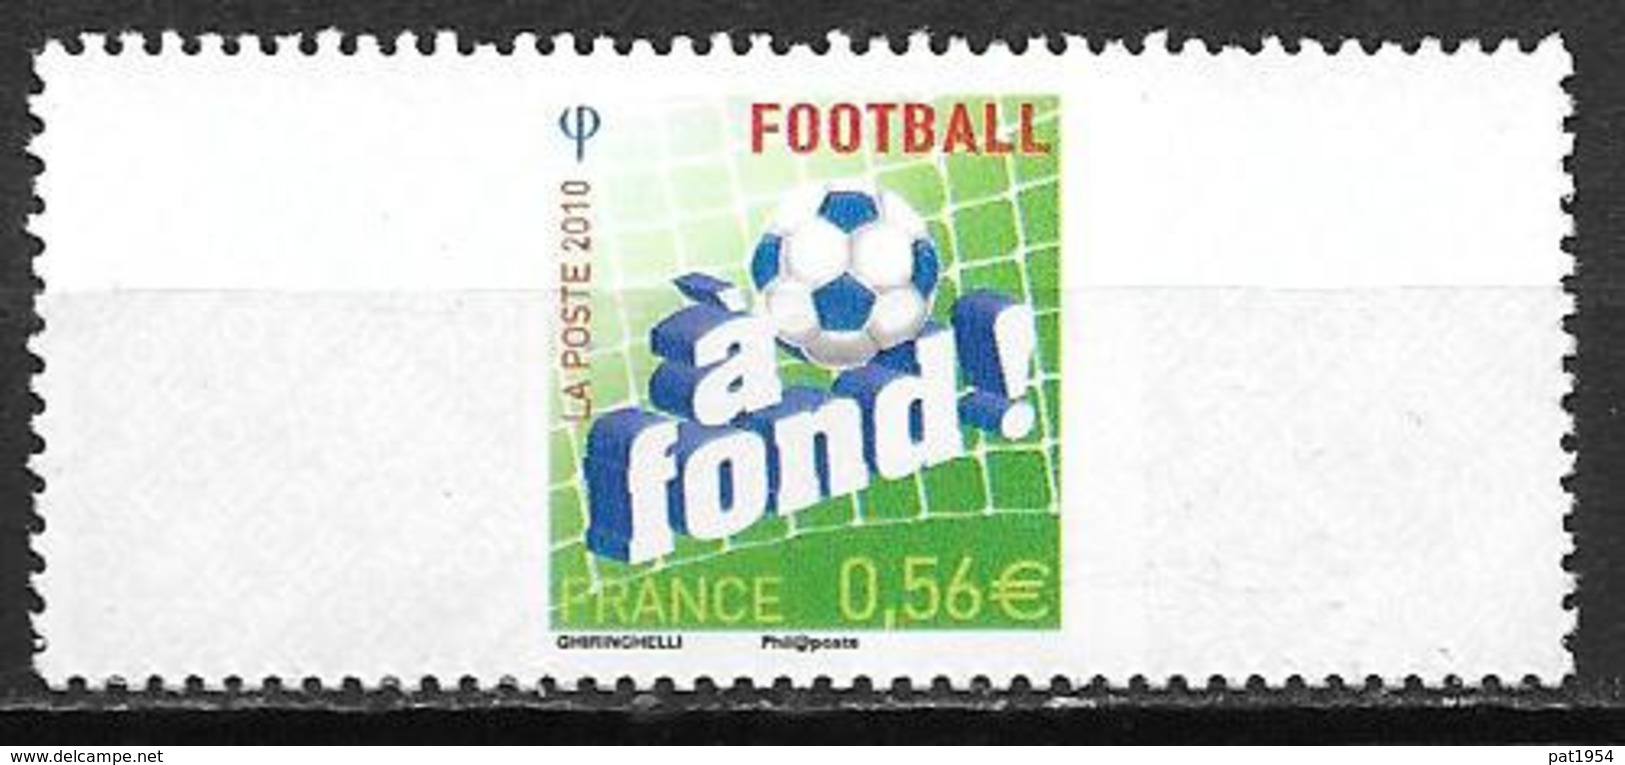 France 2010 N° RP1 Neuf (réponse Payée) Football, à La Faciale - Ungebraucht